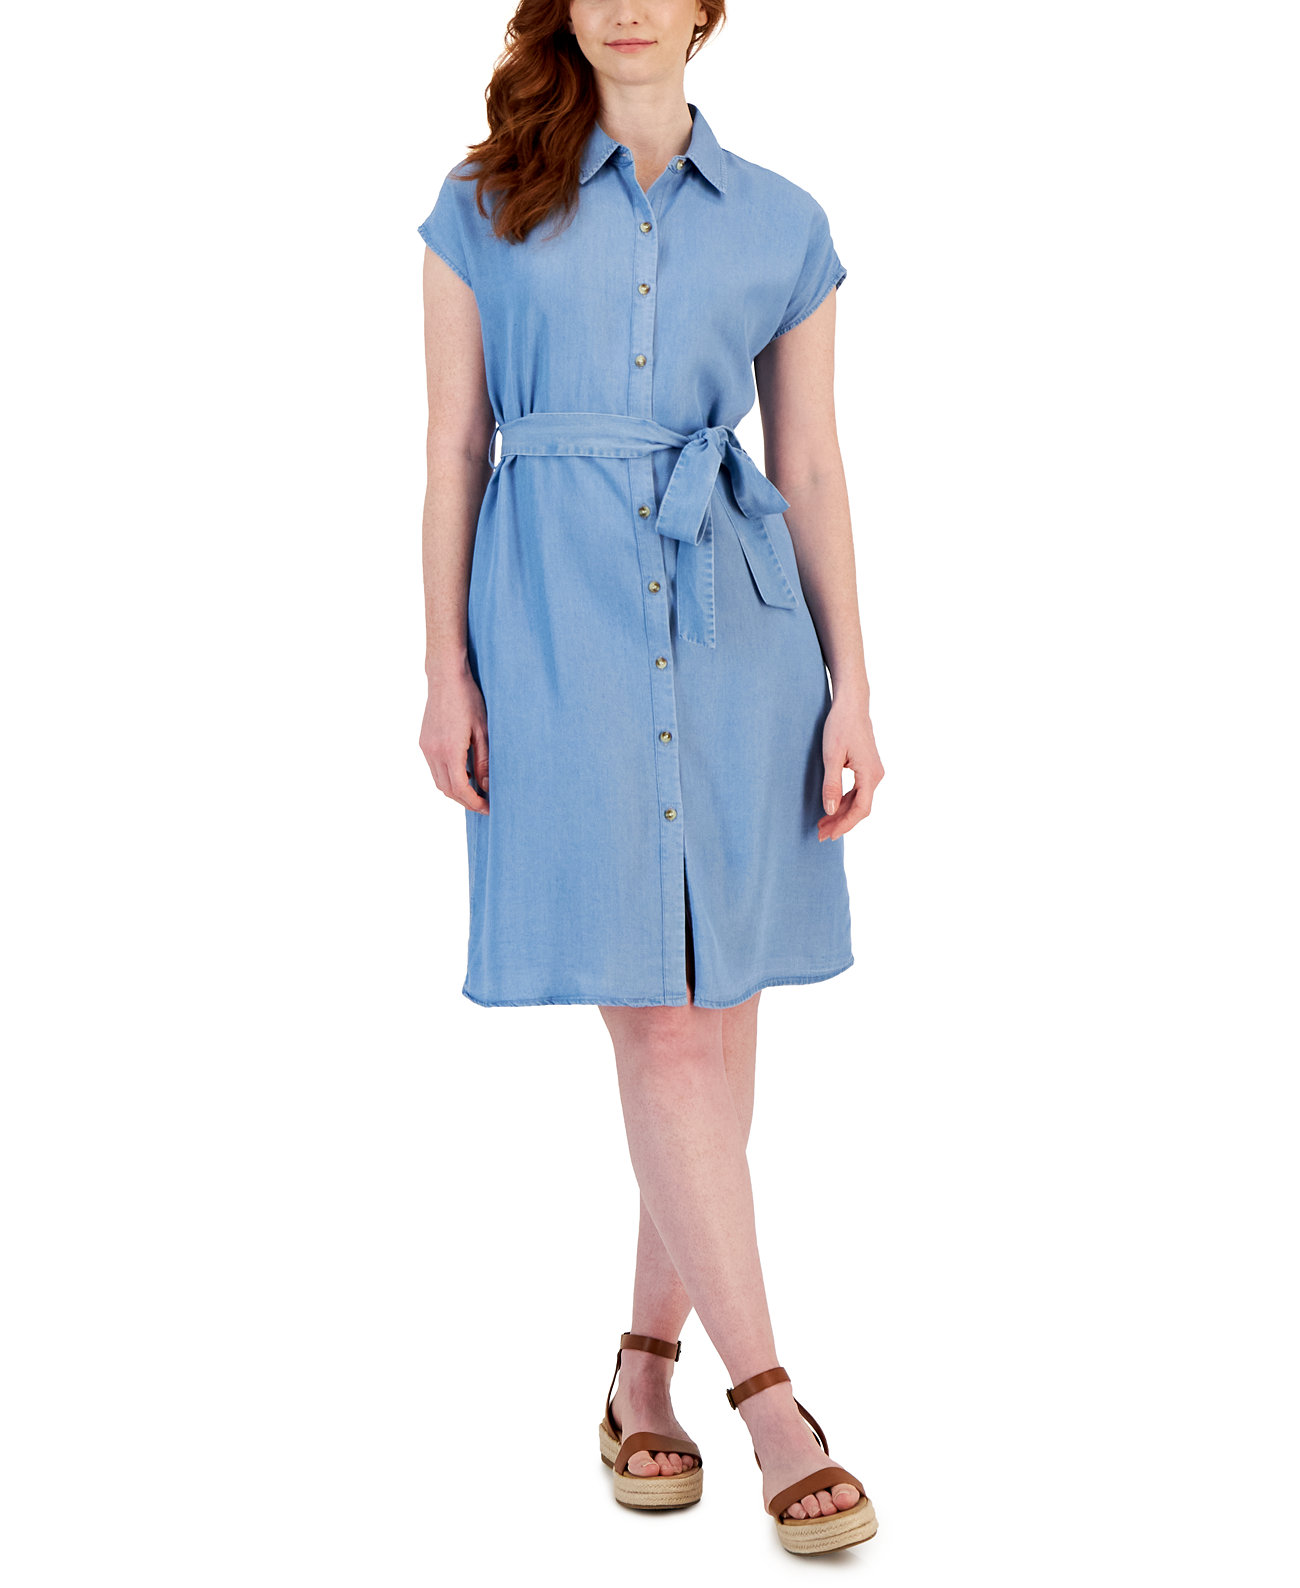 Женское джинсовое платье-рубашка с короткими рукавами и завязками на талии, созданное для Macy's Style & Co